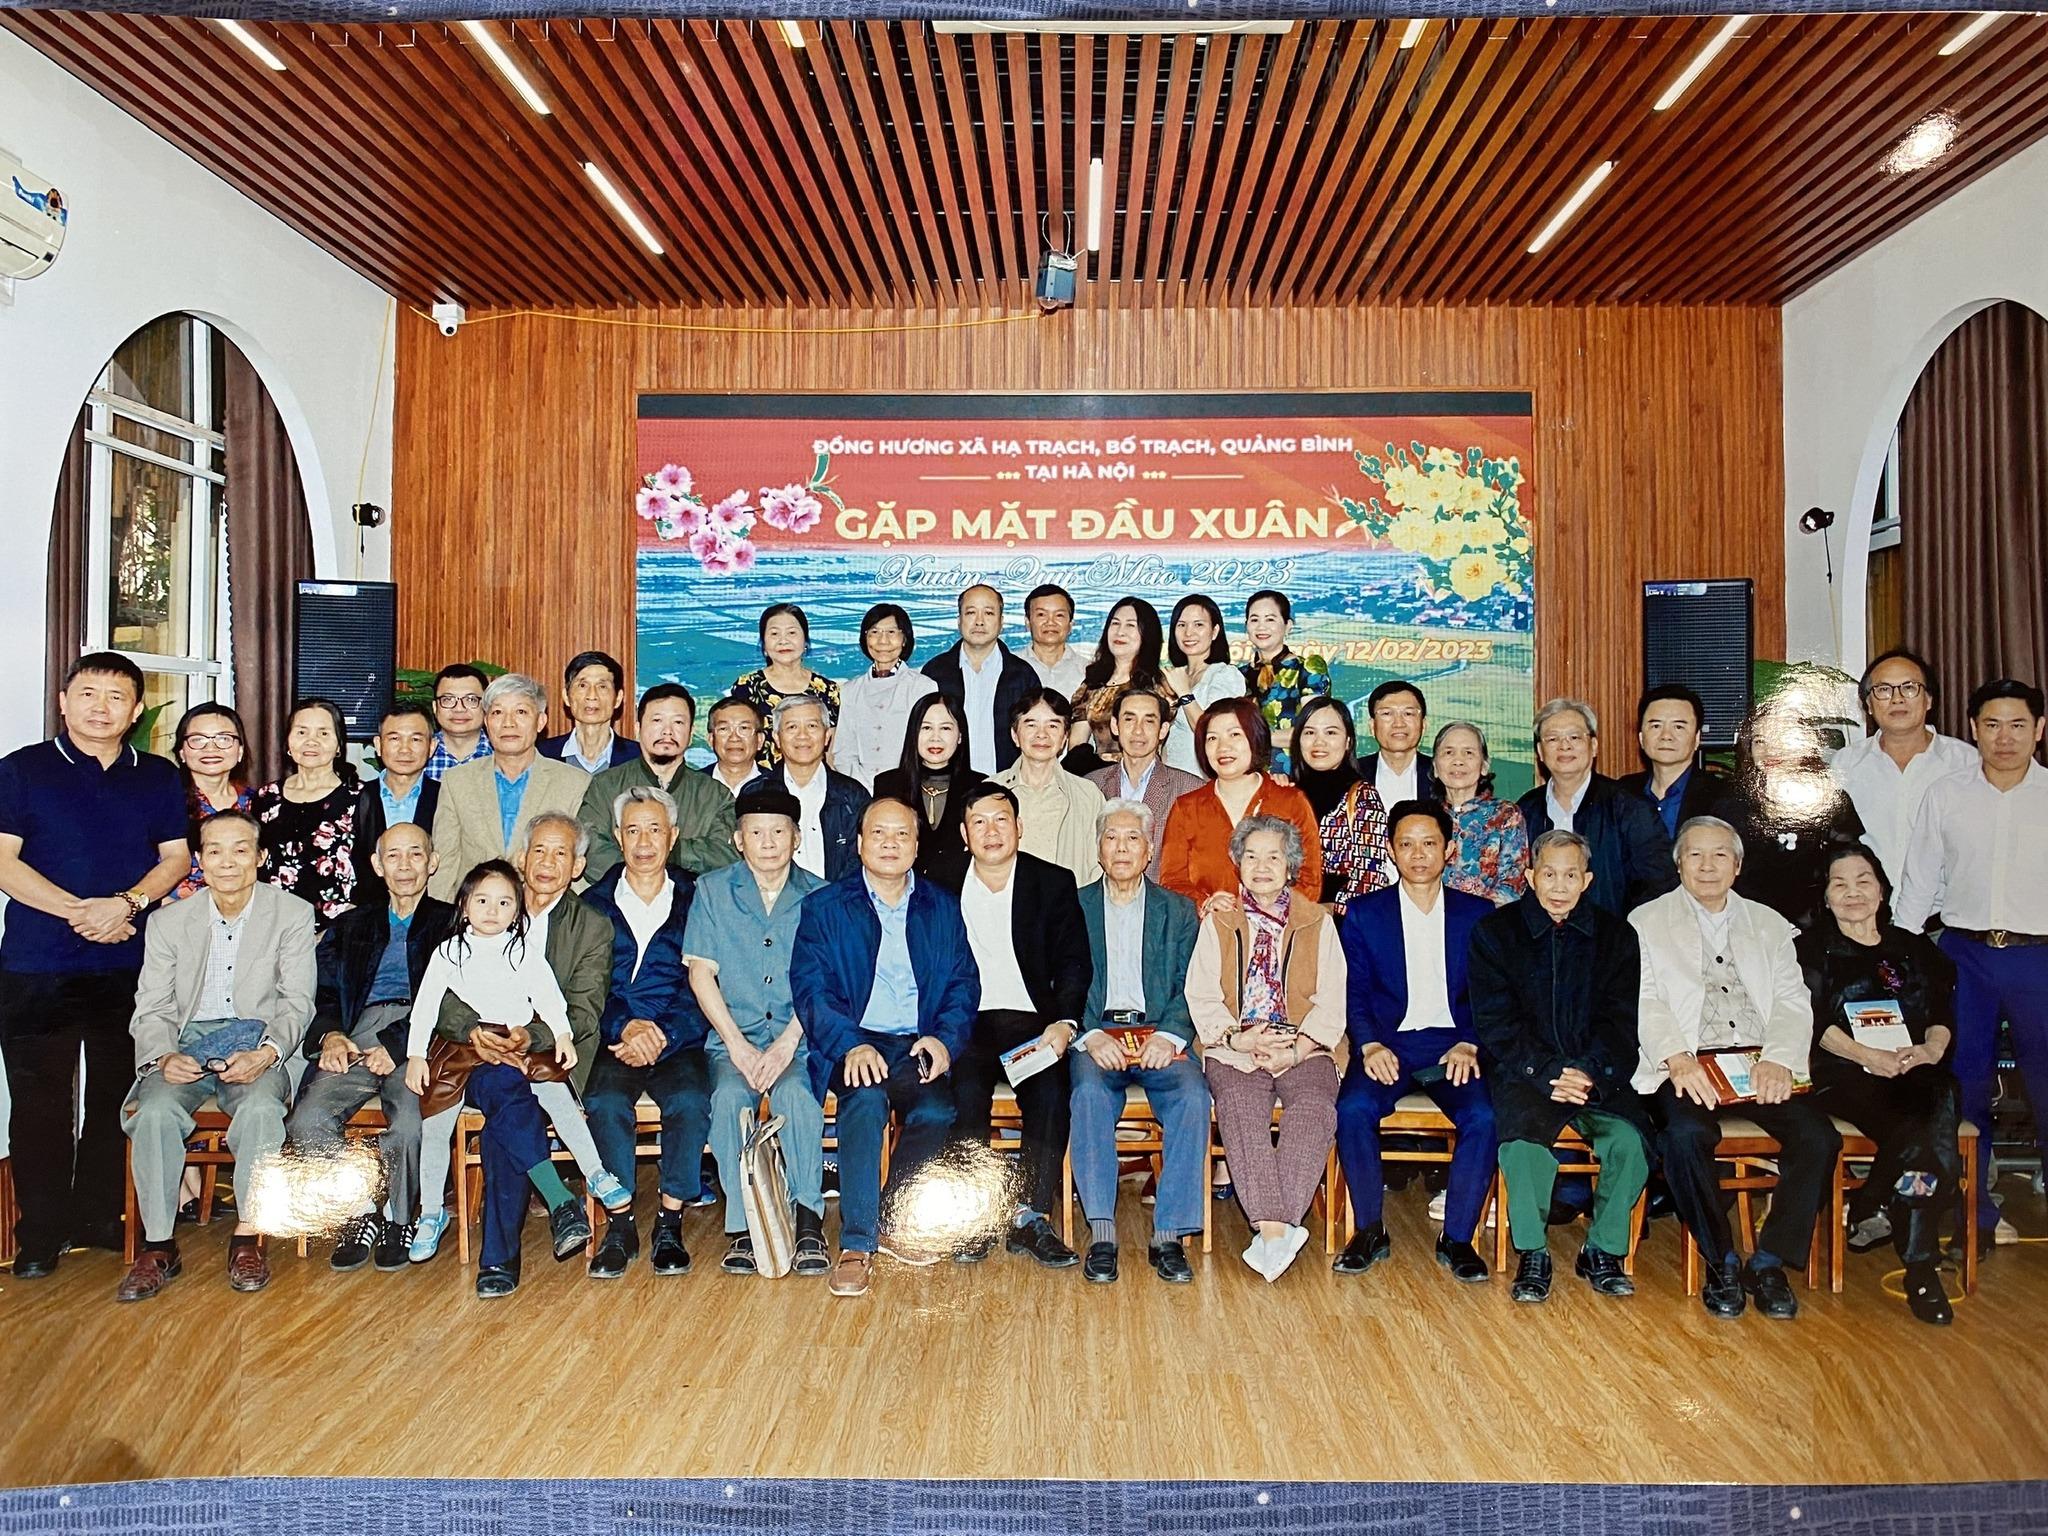 Mời họp mặt đồng hương Hạ Trạch tại Hà Nội